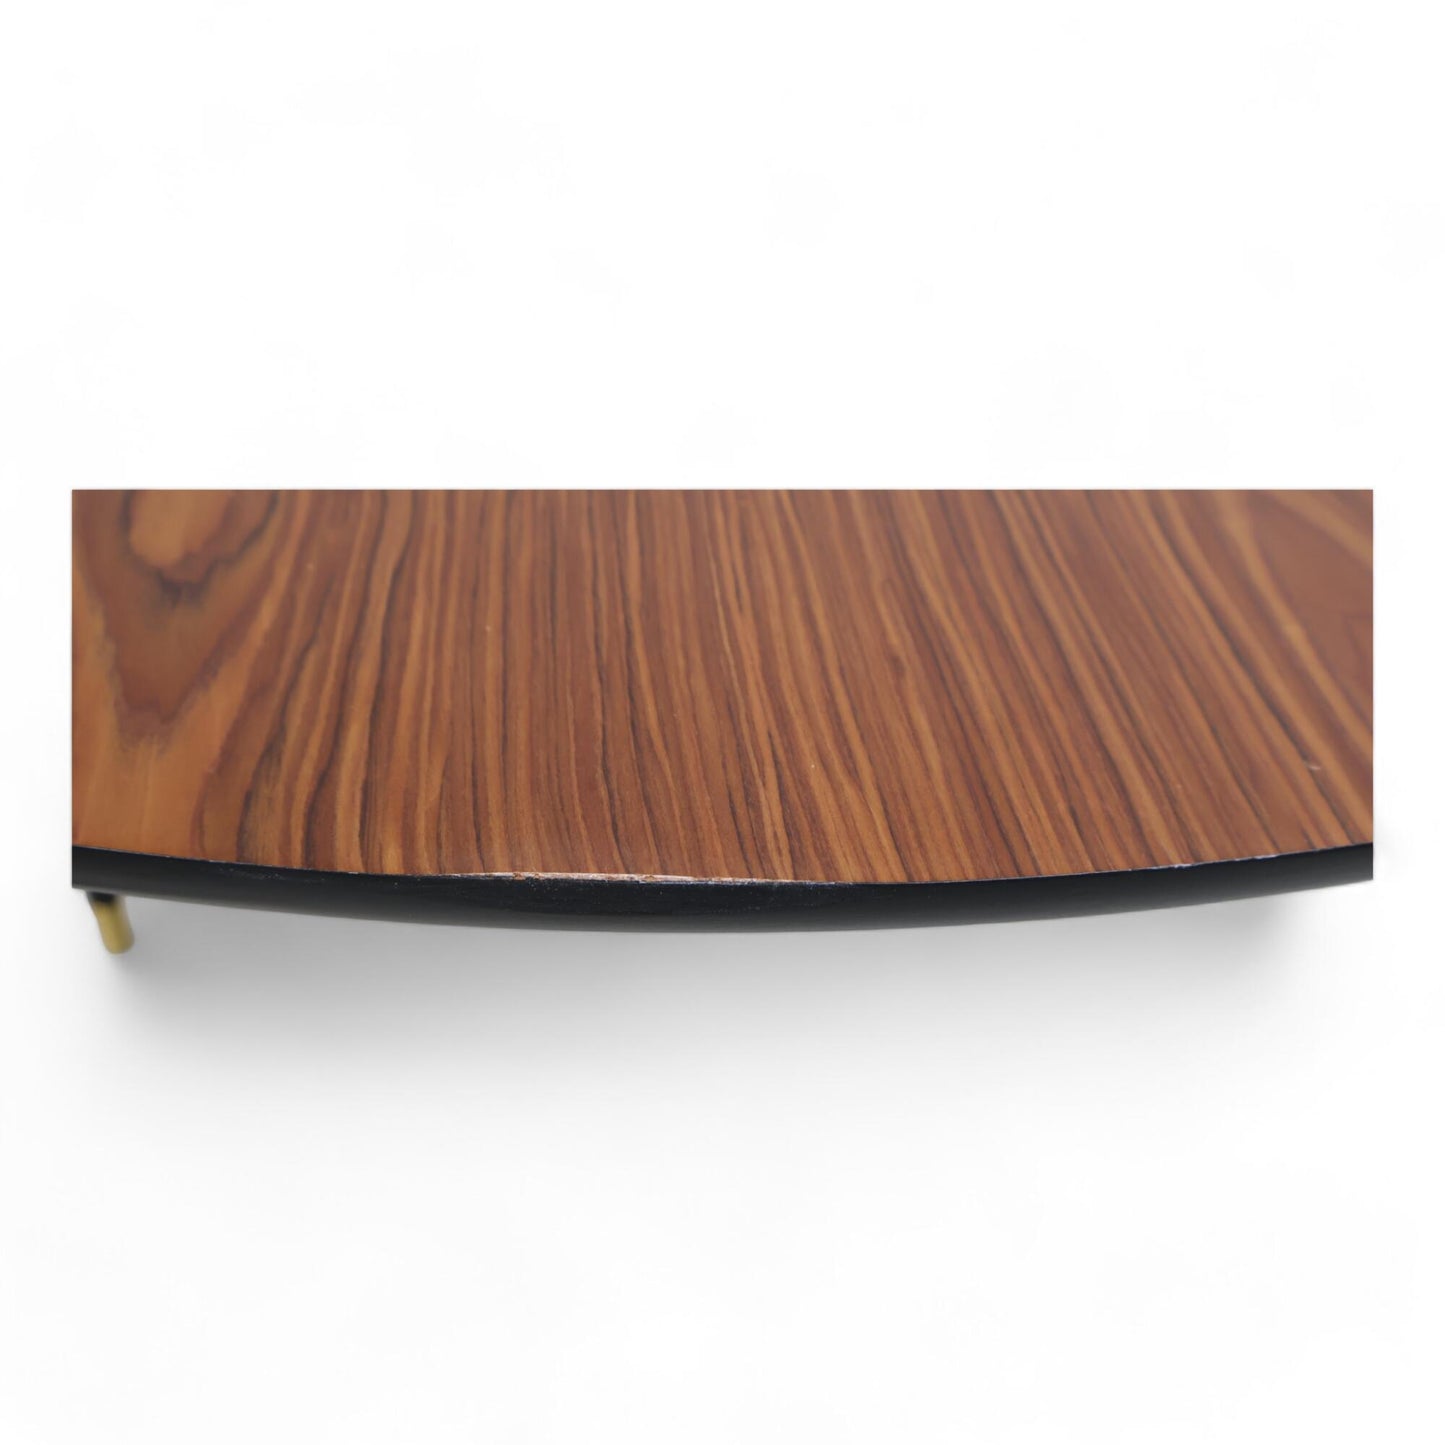 Nyrenset | LÖVBACKEN Bord, mellombrun, 77x39 cm